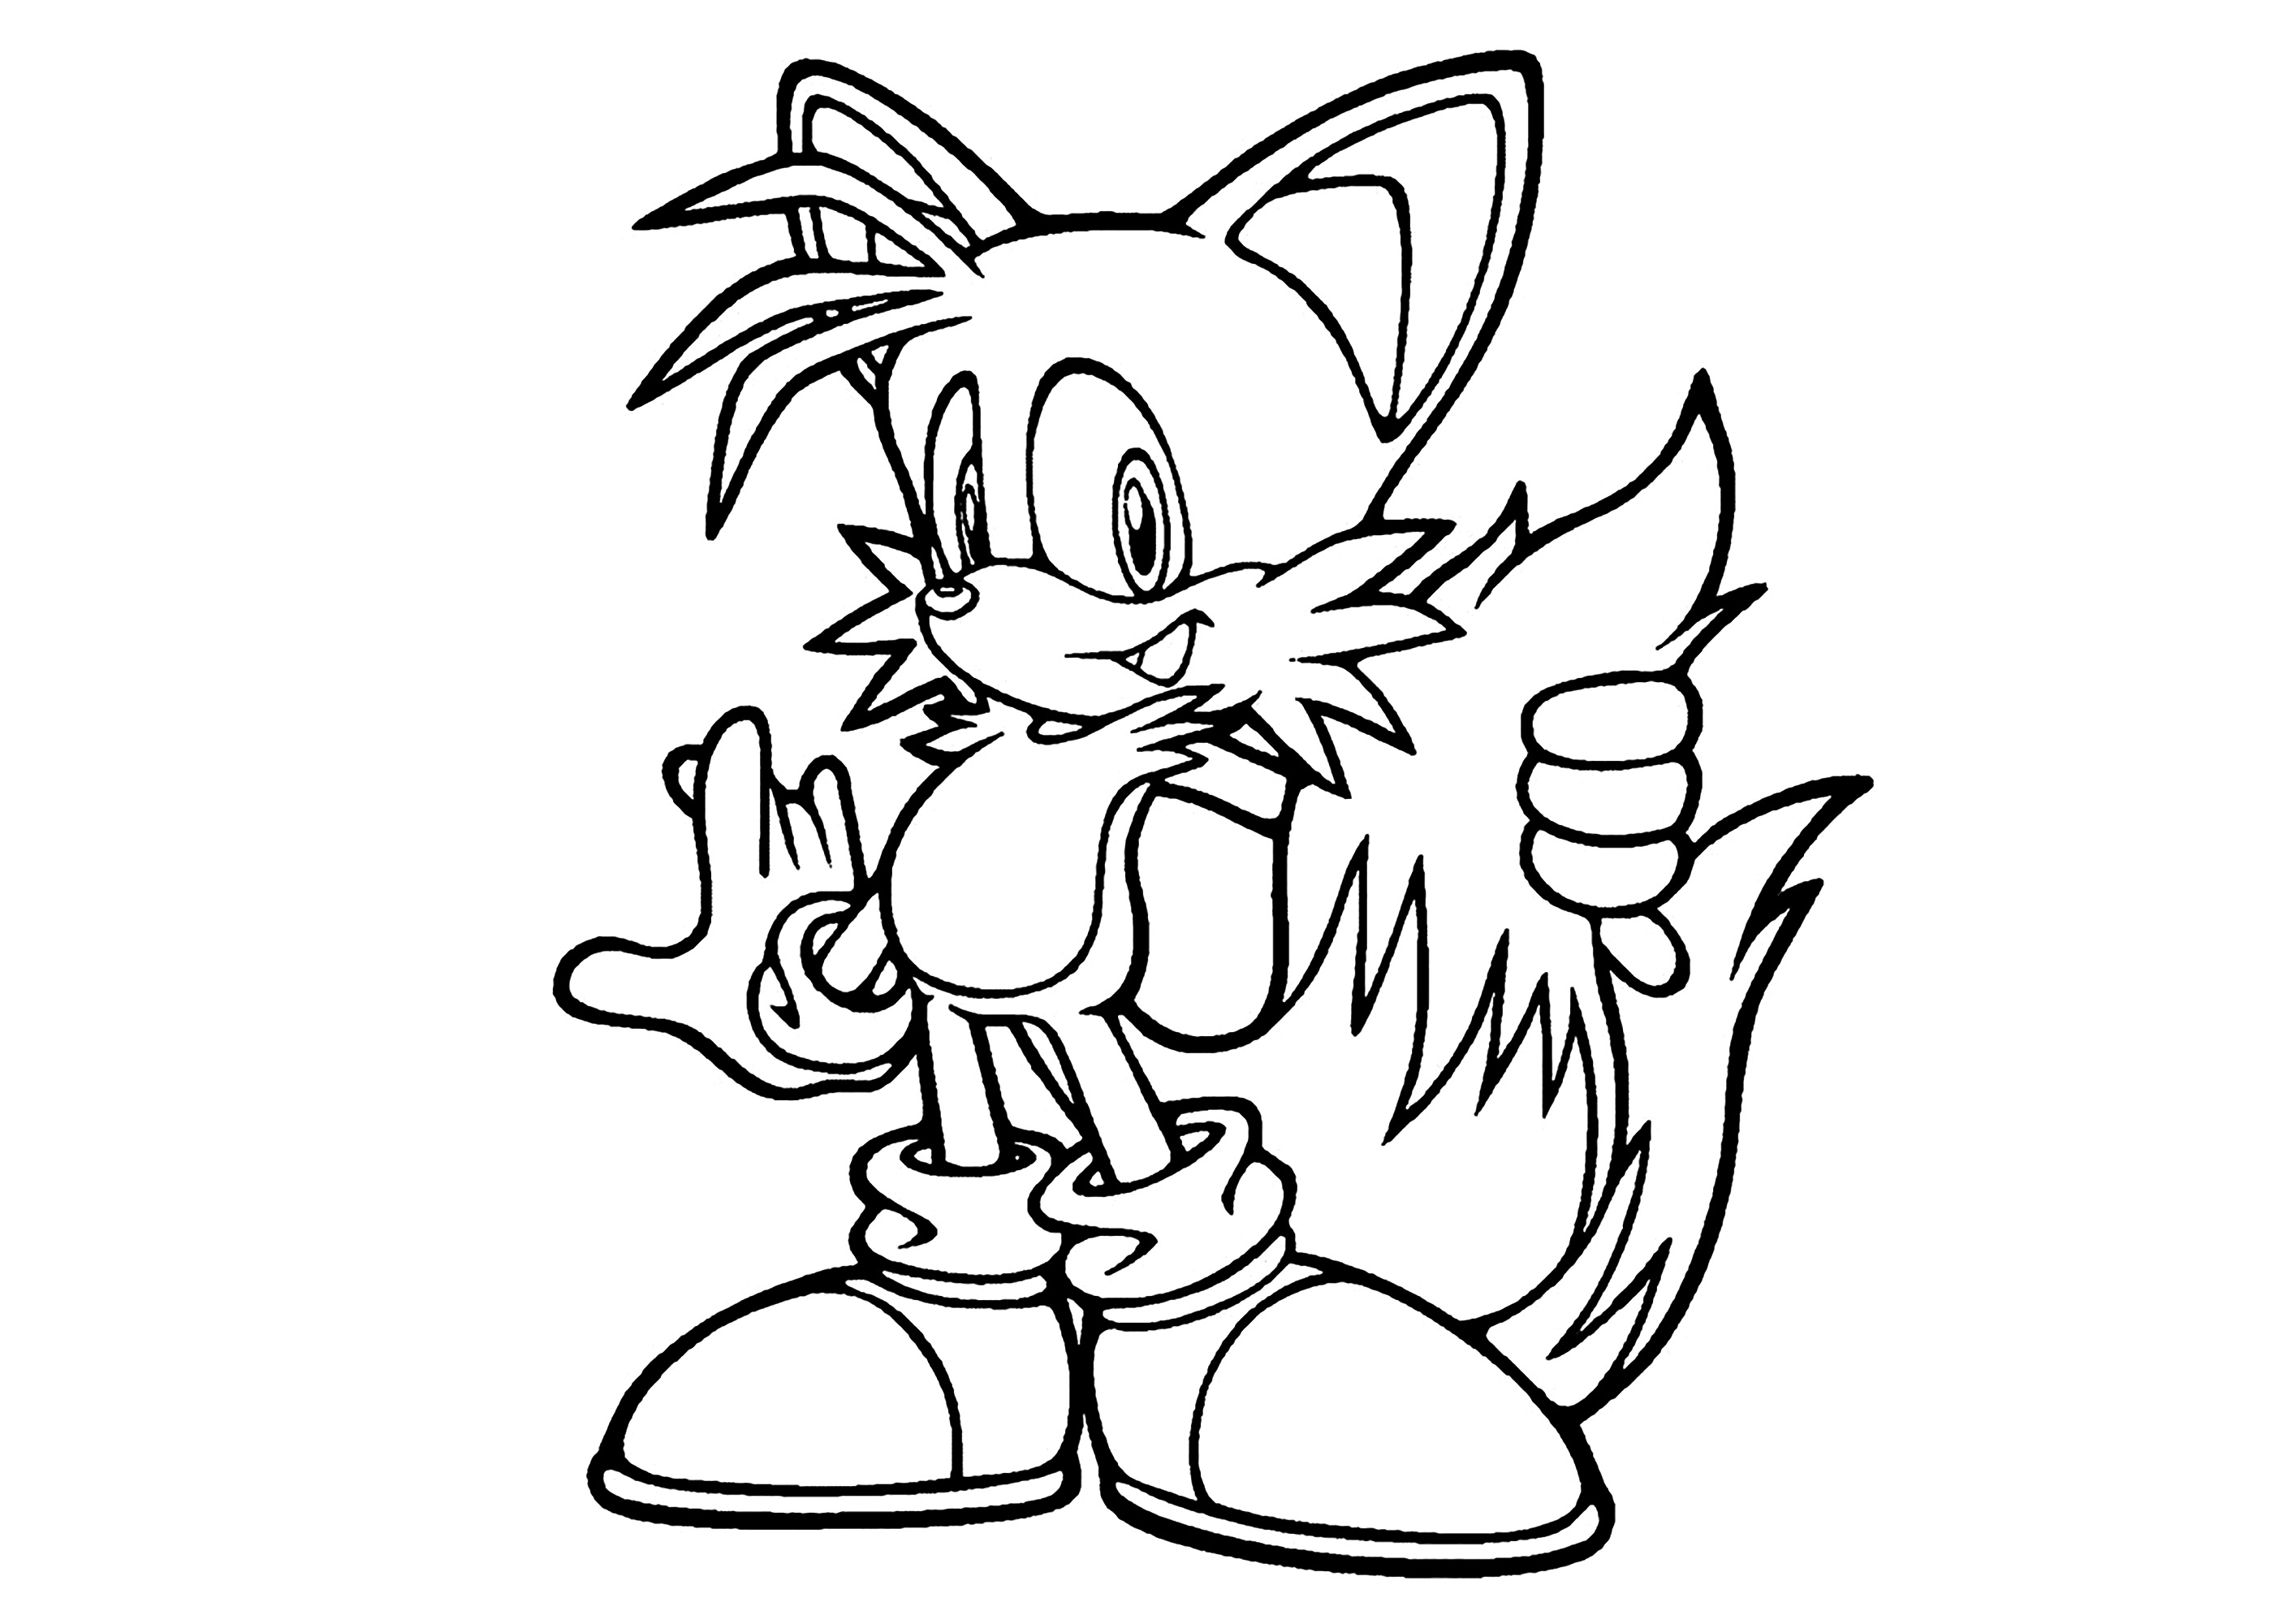 Coloreado sencillo de Tails, el amigo zorro de Sonic